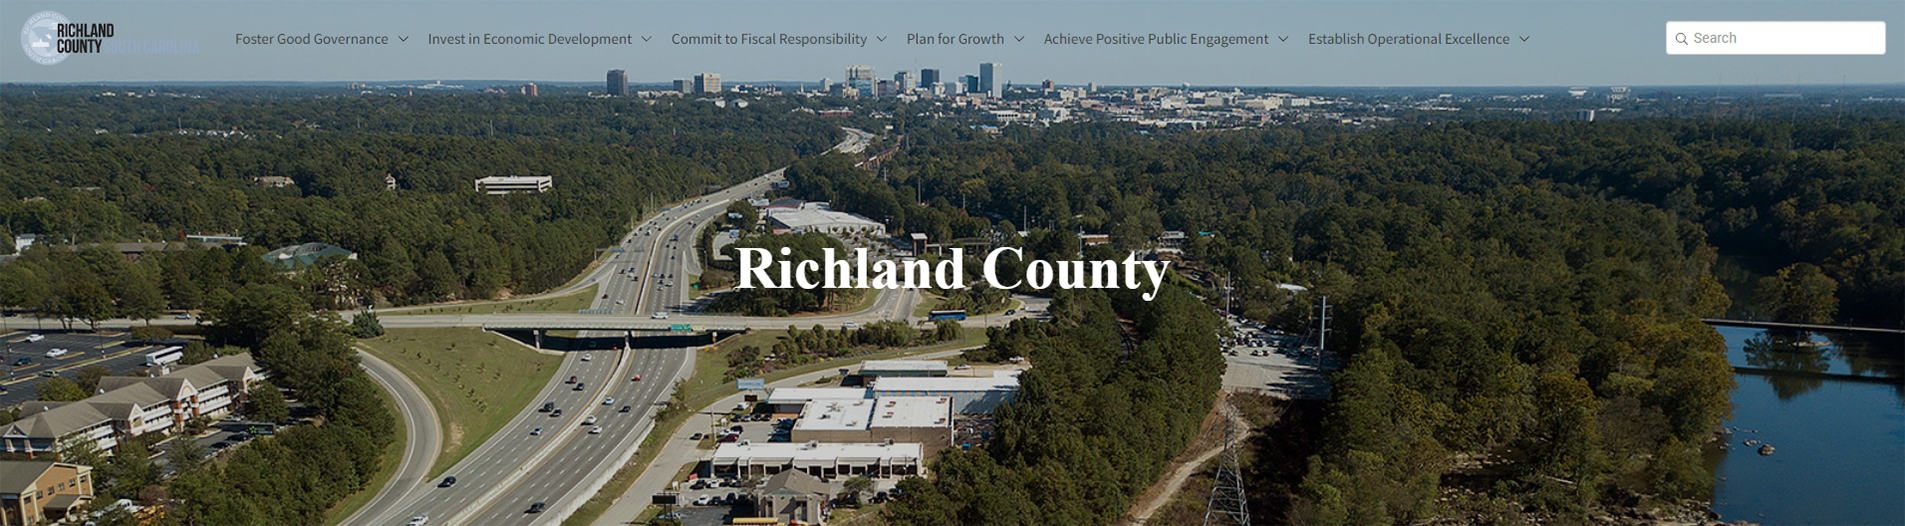 Richland County Strategic Plan - Public Dashboard